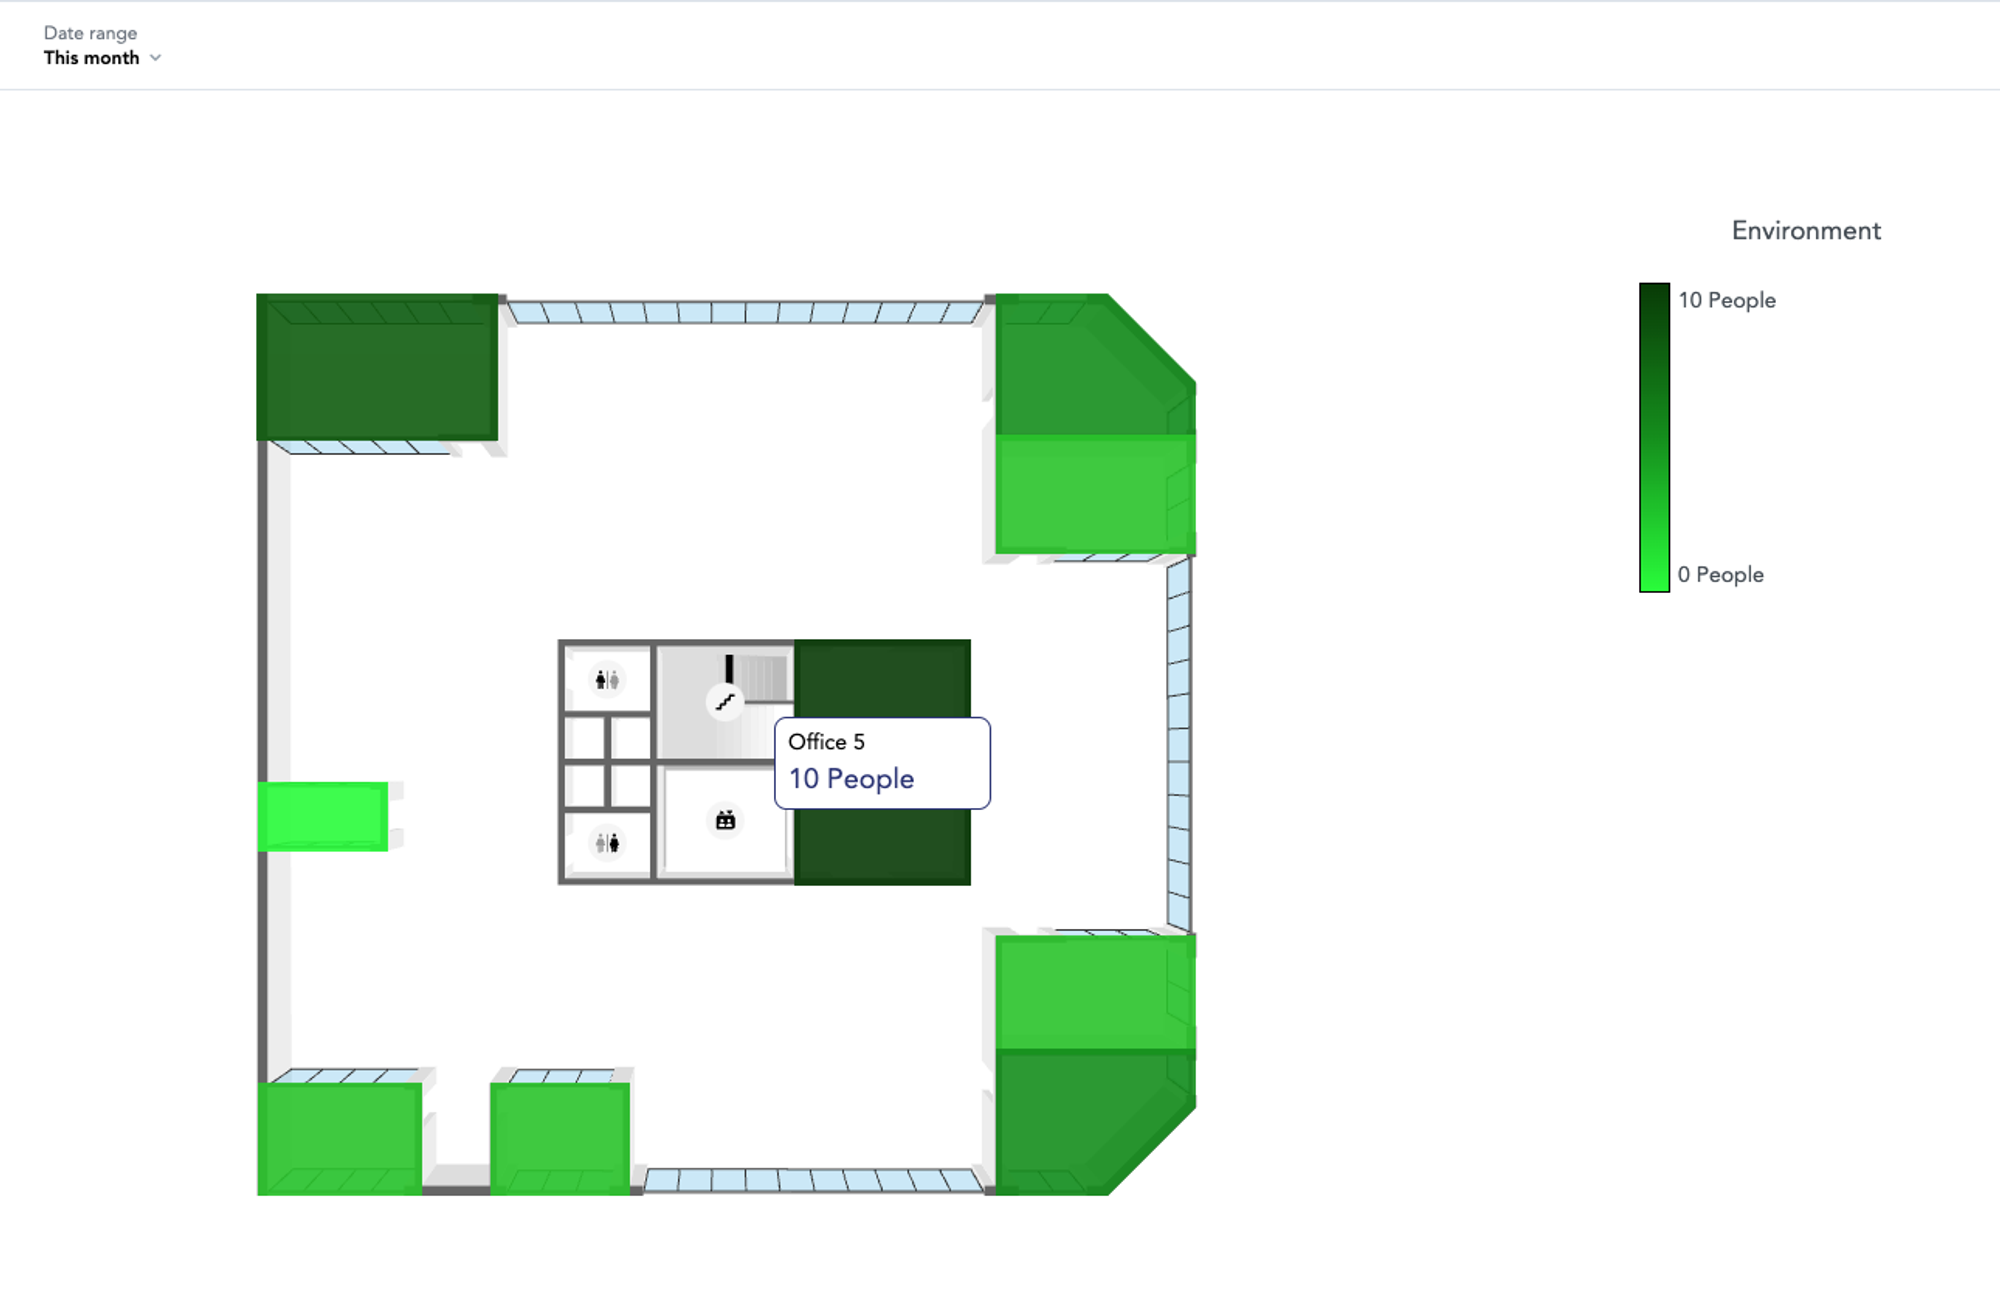 Interactive floor plan built with GoodData's React SDK